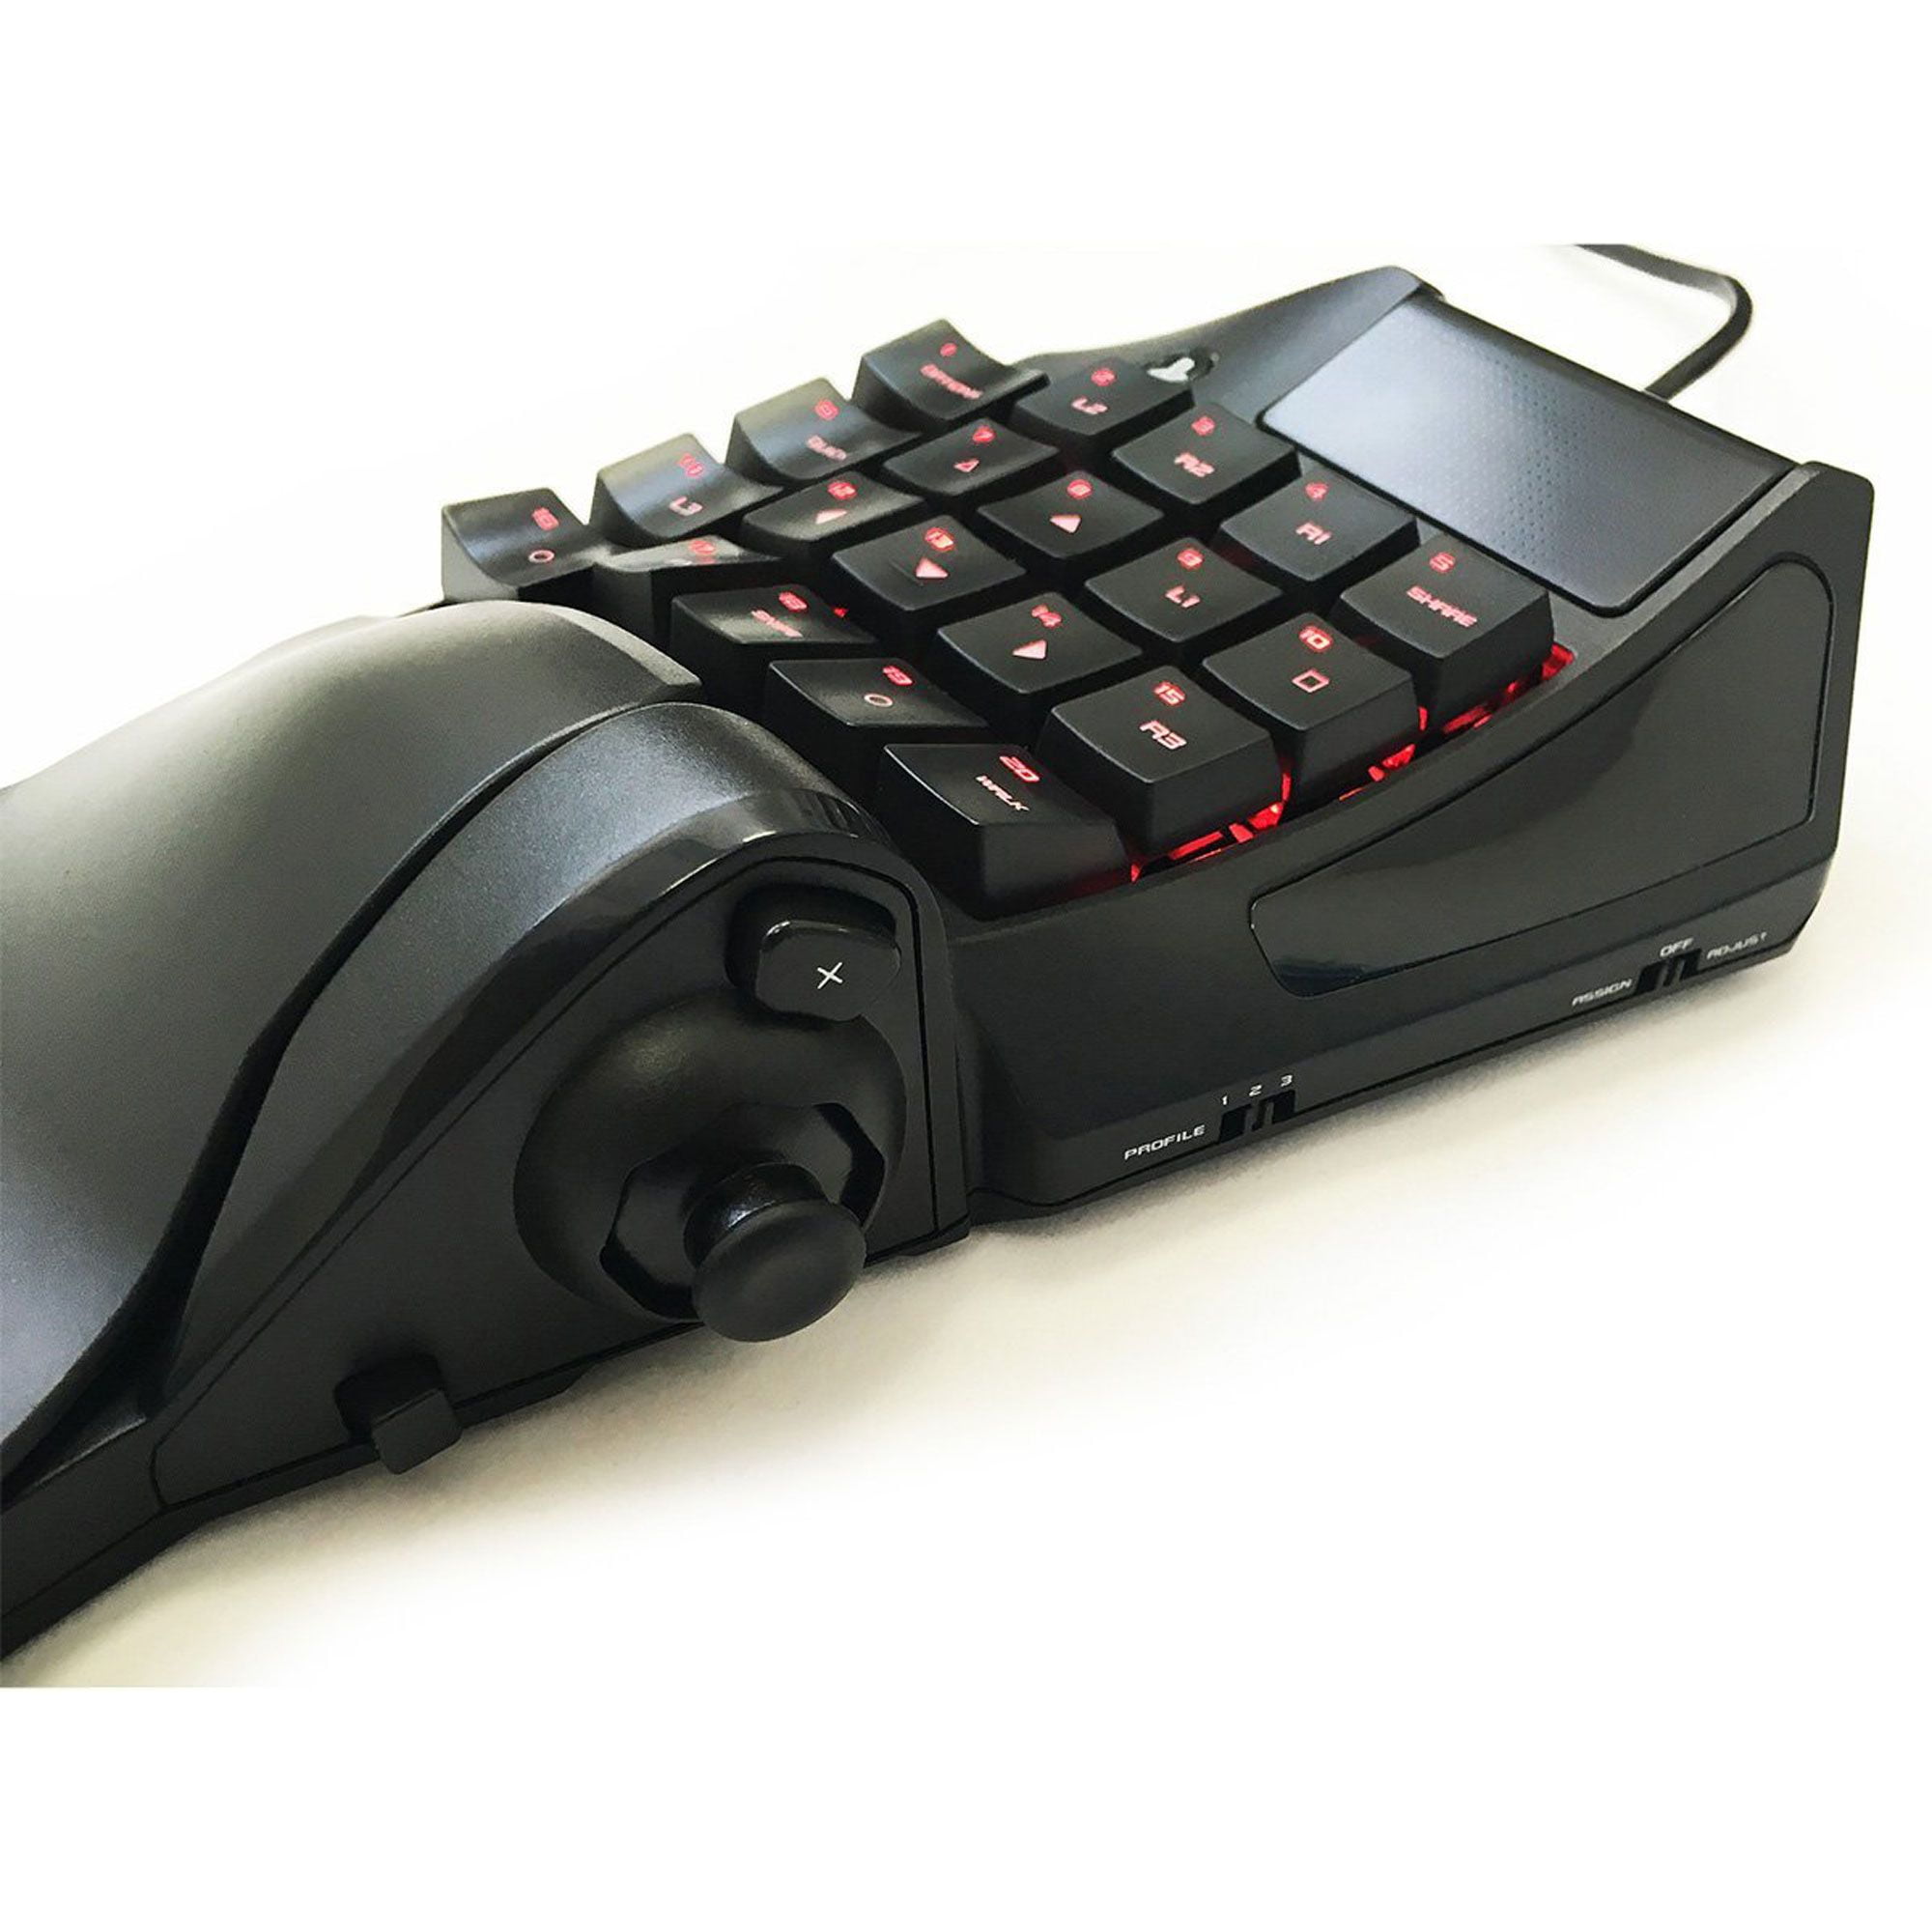 hori ps4 mouse controller